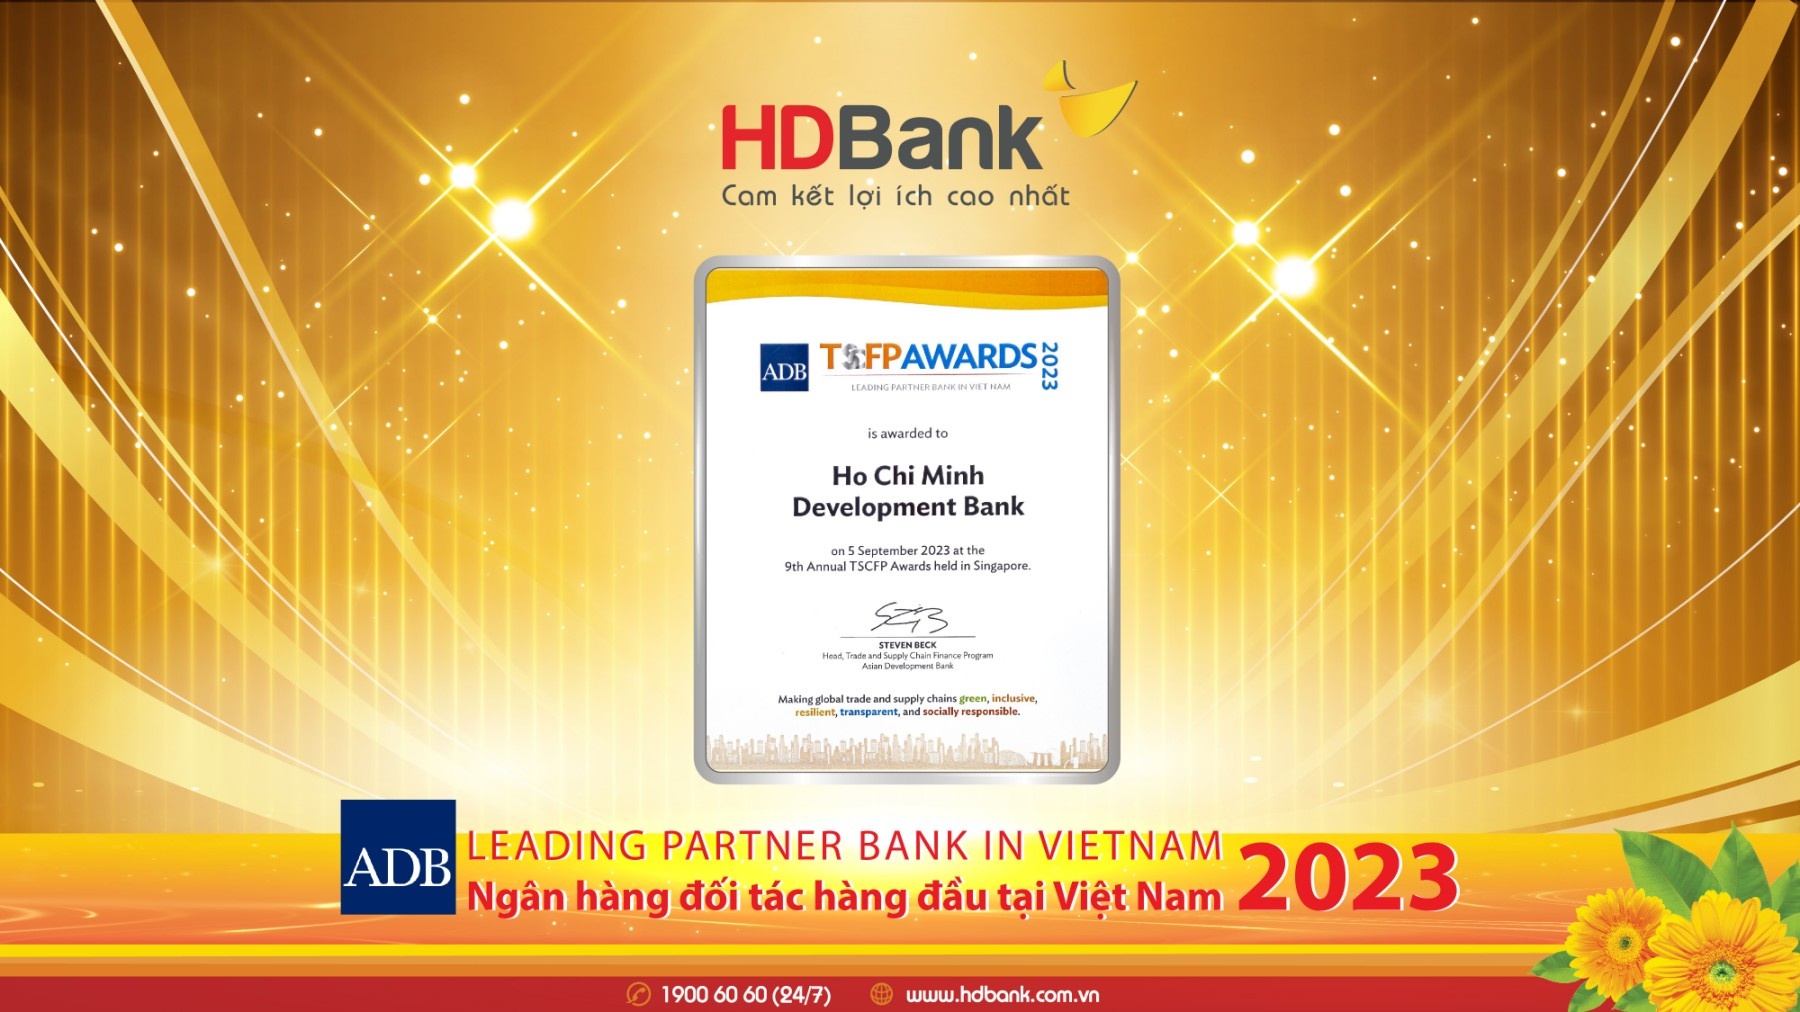 HDBank is honoured as ADB's leading partner bank in Vietnam